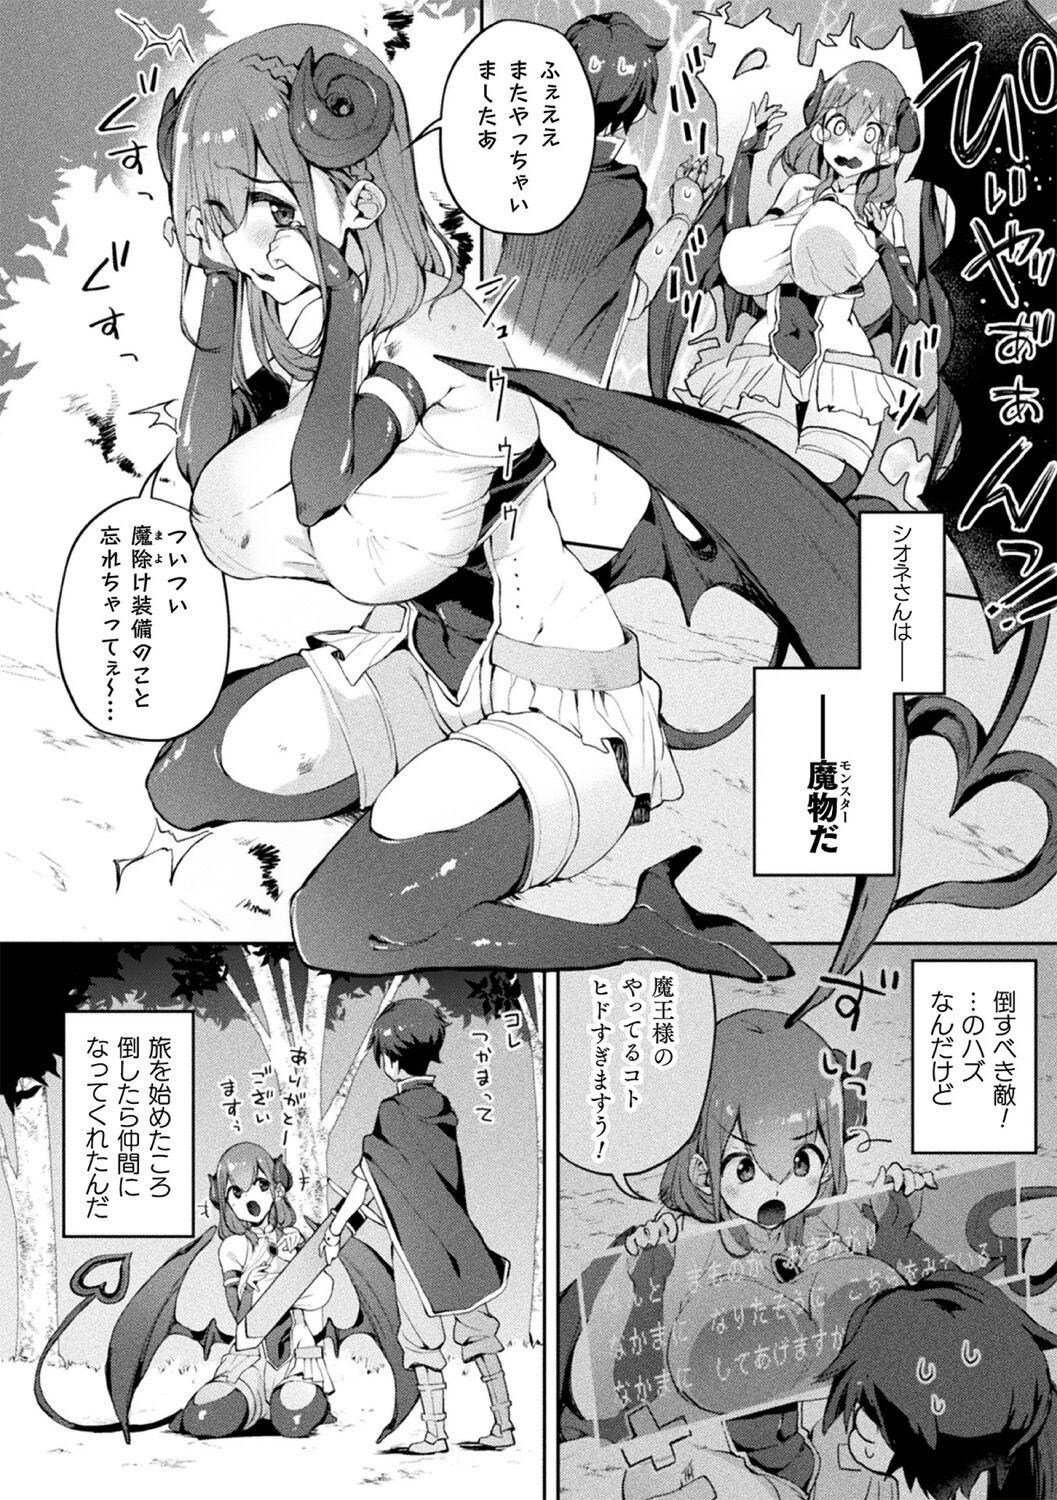 Bessatsu Comic Unreal Jingai Onee-san ni Yoru Amayakashi Sakusei Hen Vol. 3 5